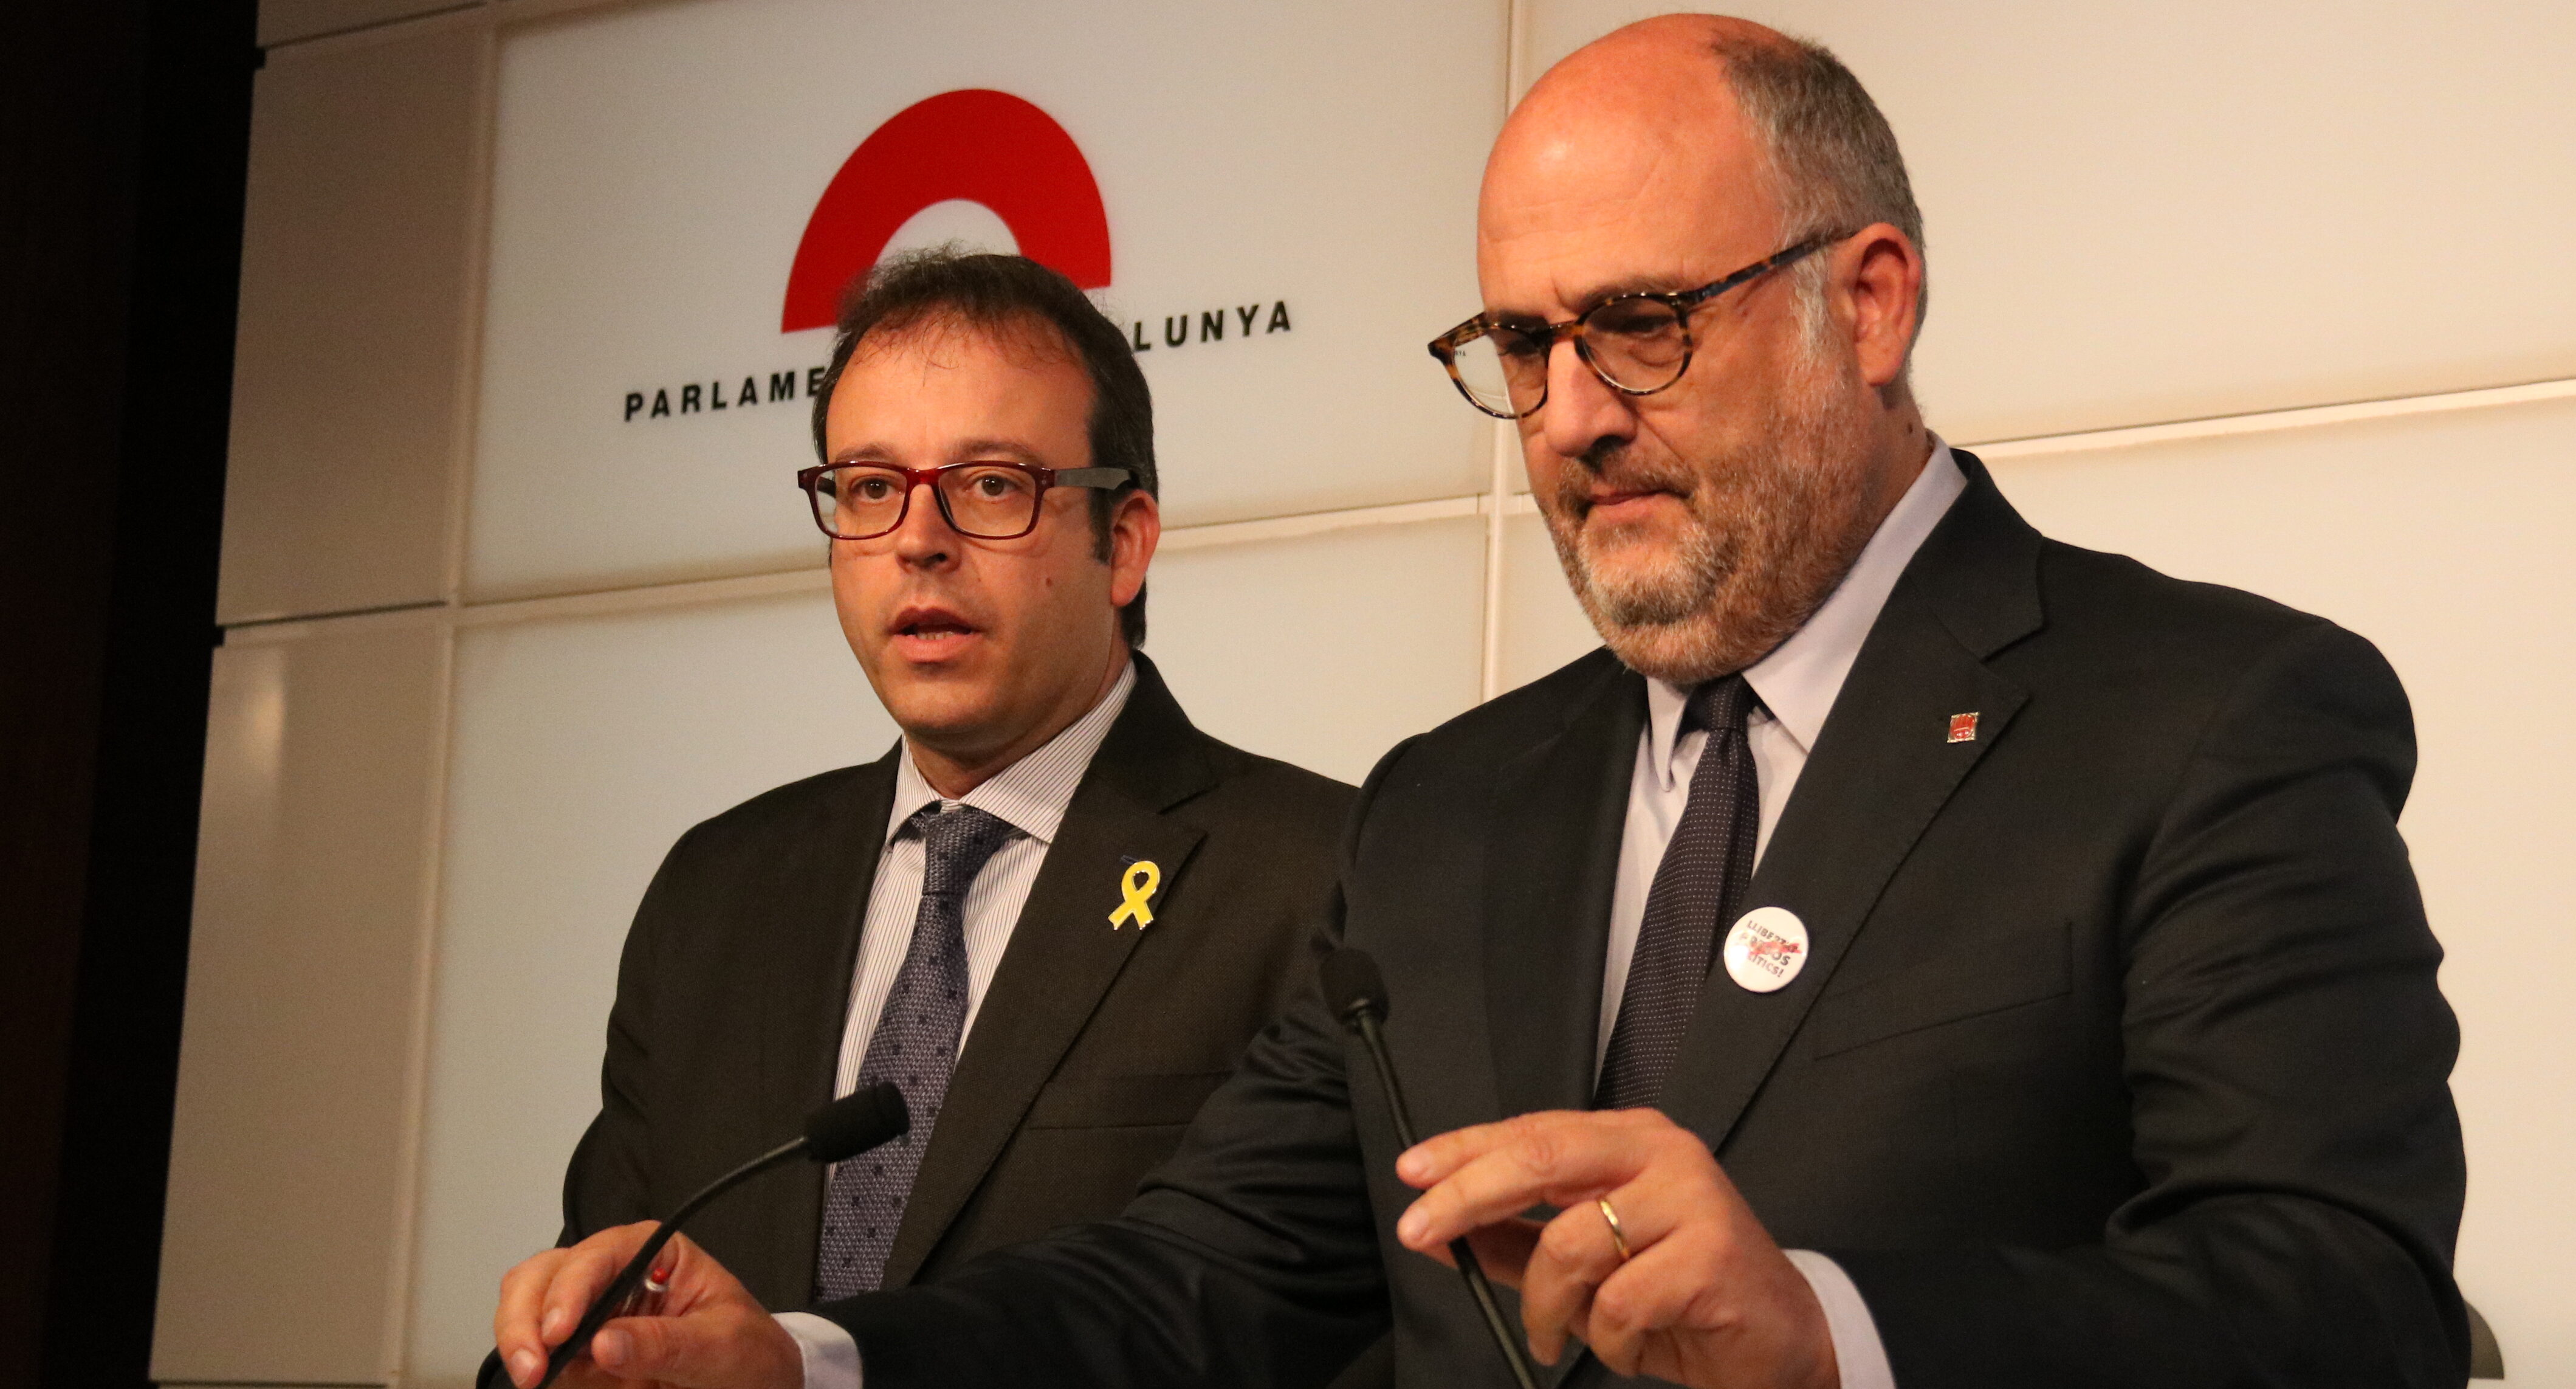 Marc Solsona, portaveu del PDECat, i Eduard Pujol, portaveu de JxCat al parlament.